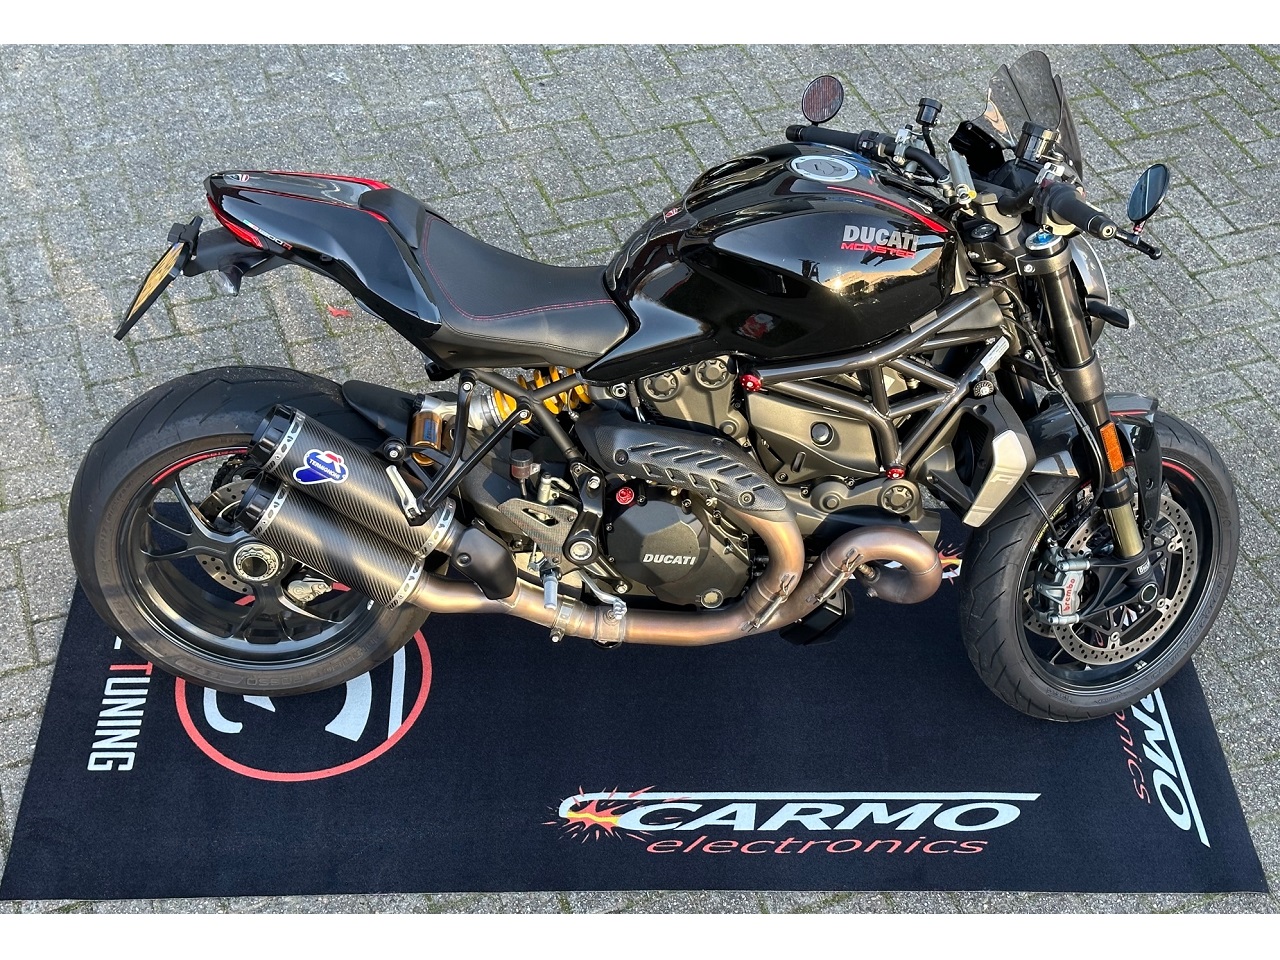 CARMO Officina pitlane moto Garage Tappetino in moquette